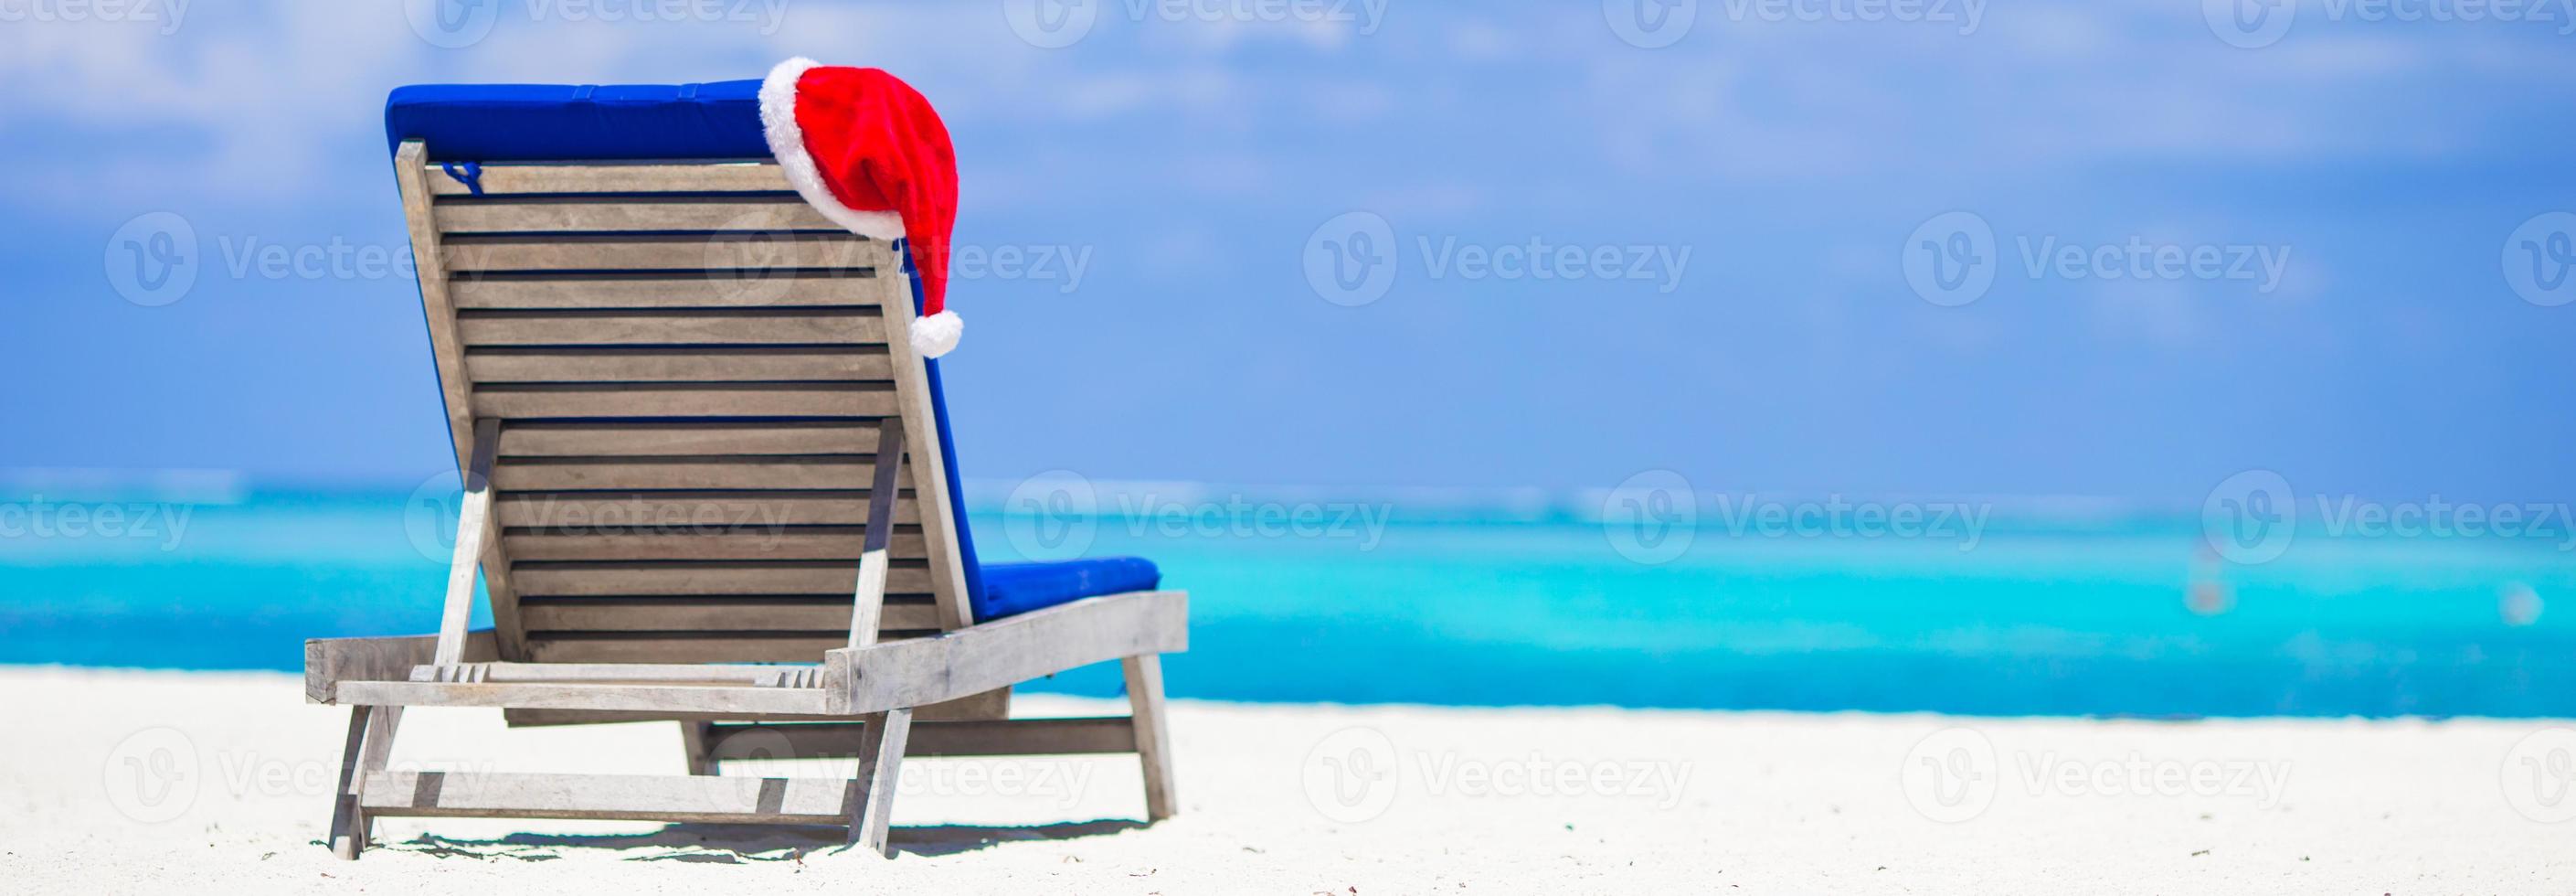 espreguiçadeira com chapéu de papai noel vermelho na praia branca tropical e água azul-turquesa foto